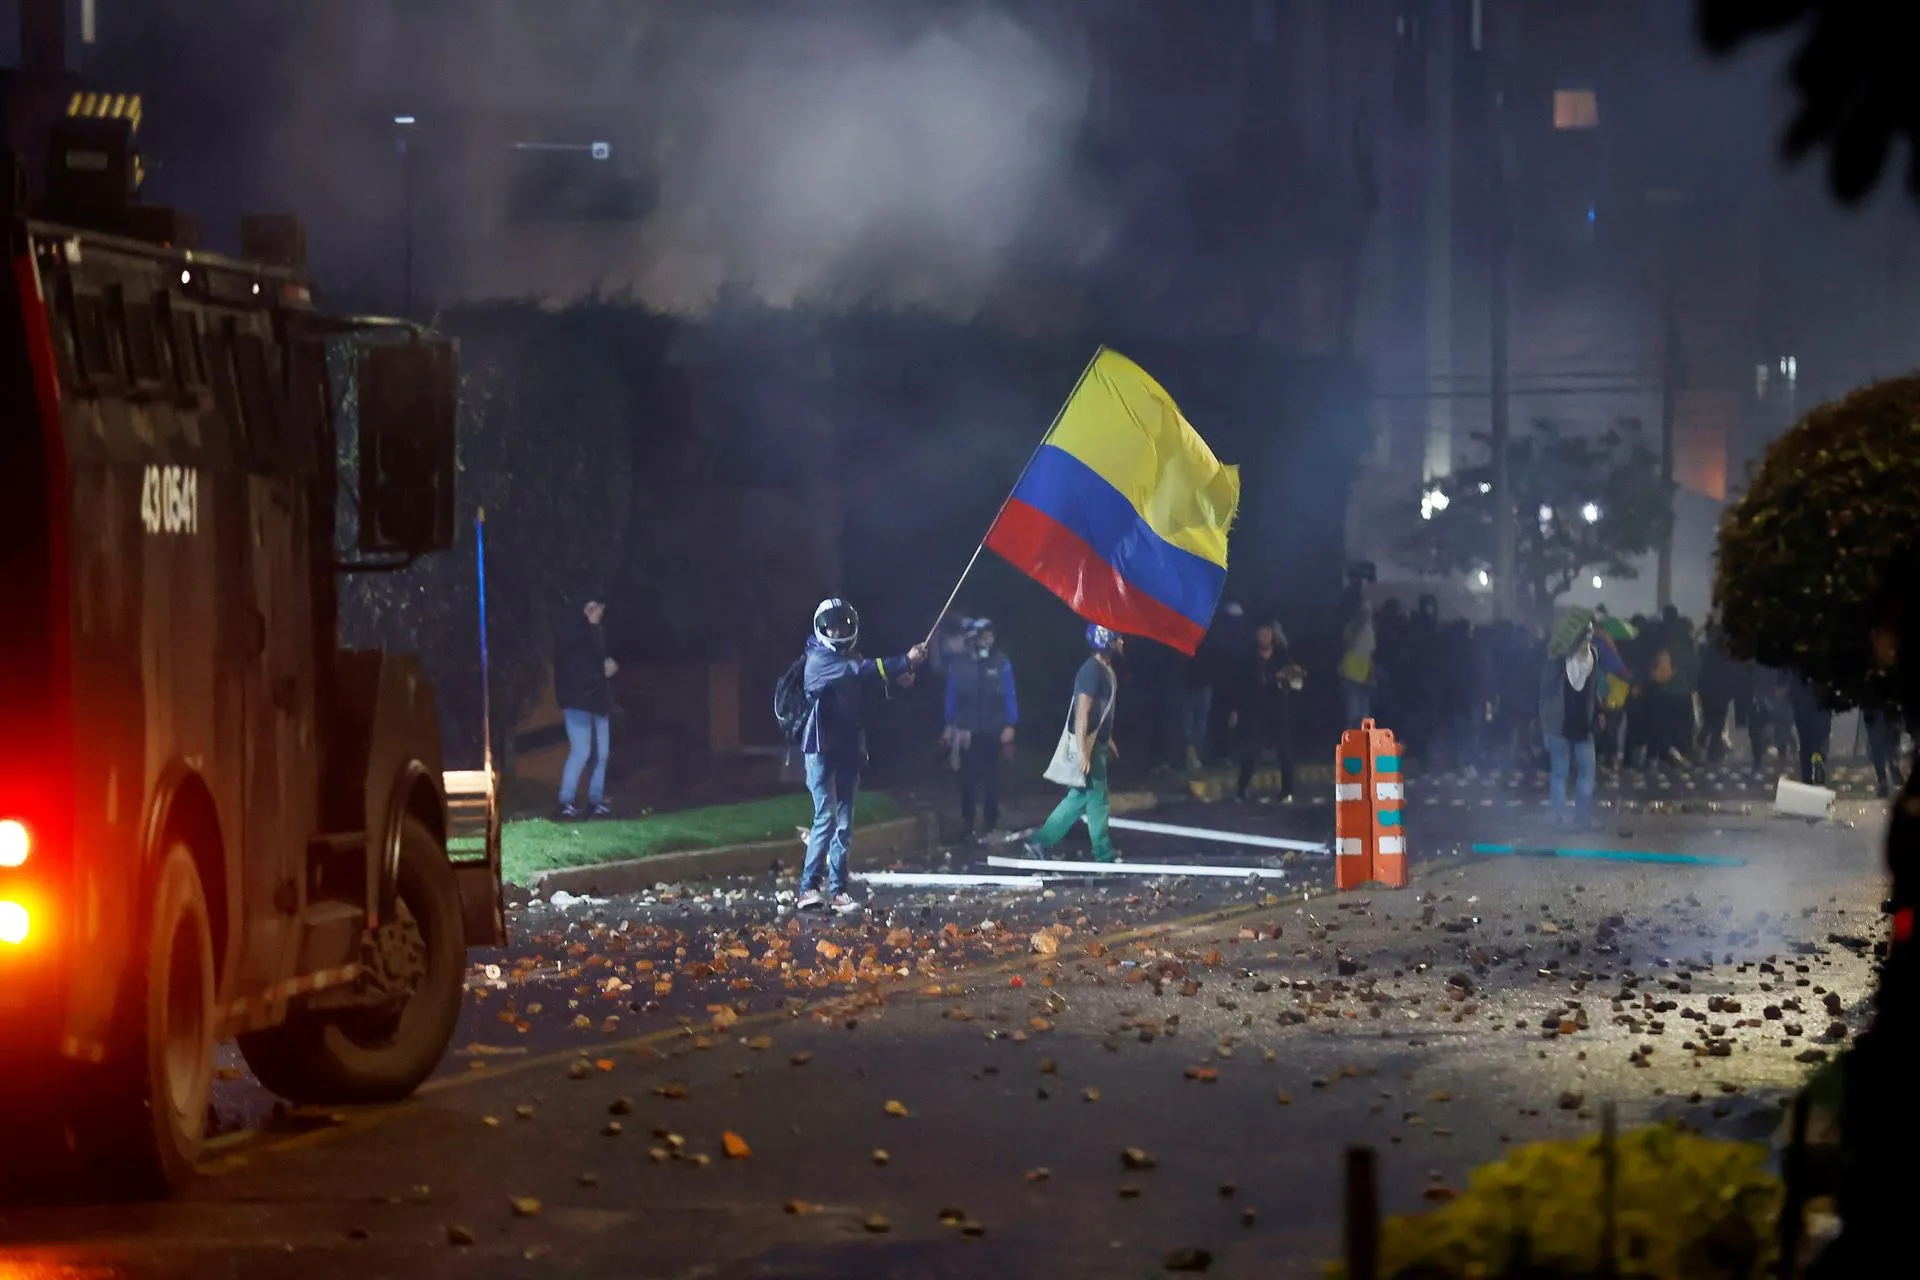 MPD y MIR solidarios con pueblo de Colombia y rechazan represión